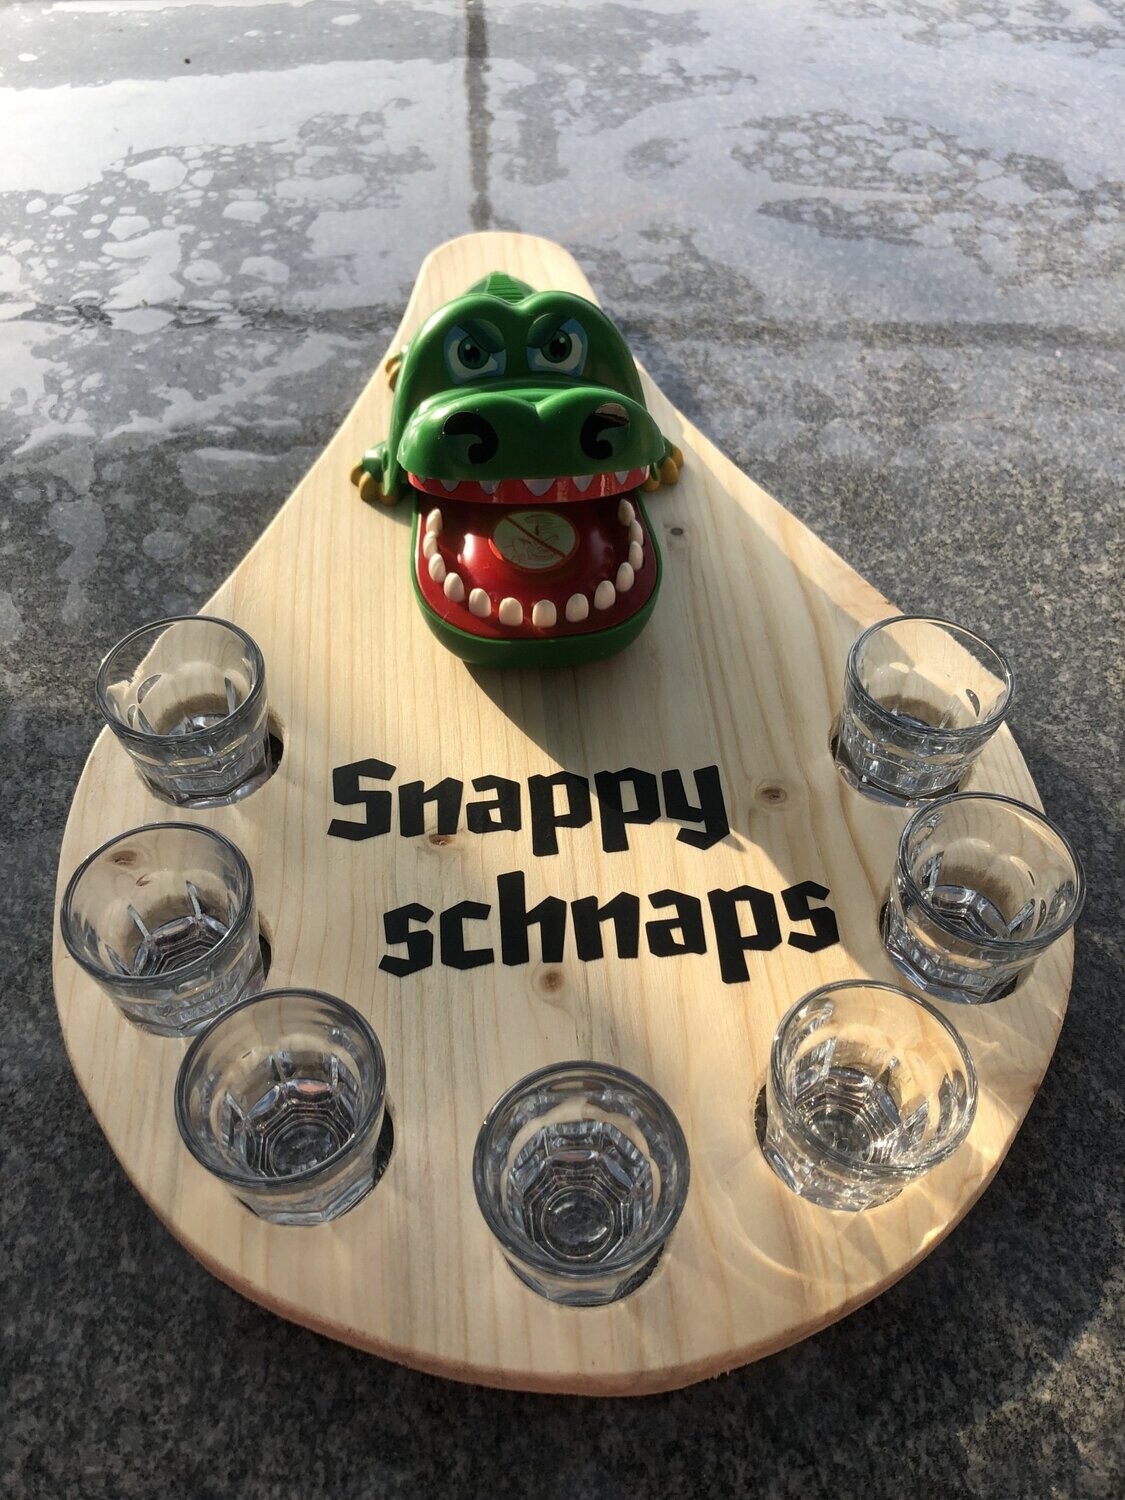 Snappy schnaps